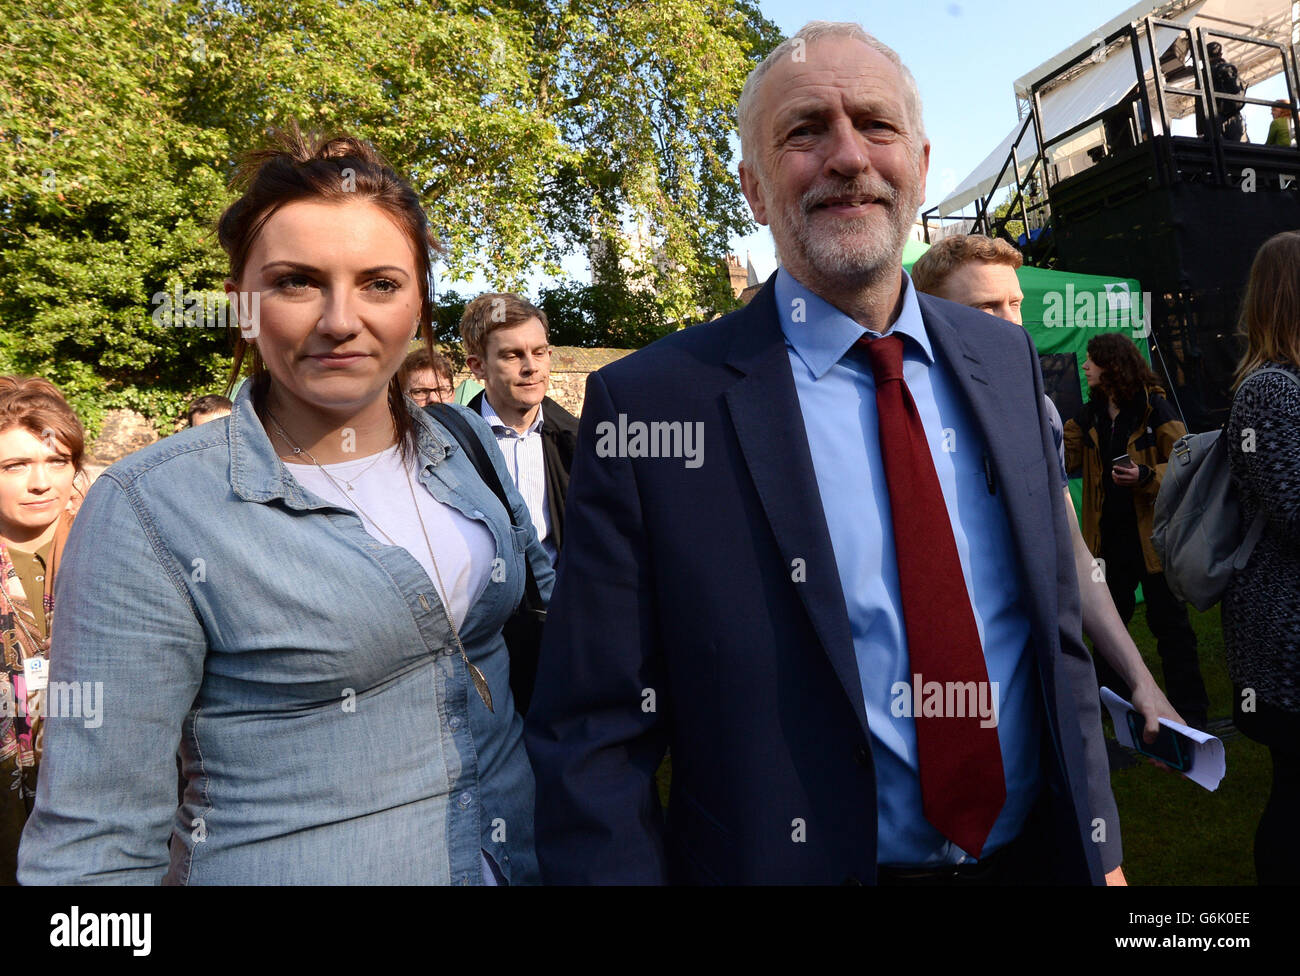 Labour-Partei Führer Jeremy Corbyn am College Green in Westminster, London, nachdem Großbritannien gestimmt, der Europäischen Union in einer historischen Volksabstimmung zu verlassen die Westminster Politik in Unordnung geworfen hat und schickte das Pfund auf den Weltmärkten taumeln. Stockfoto